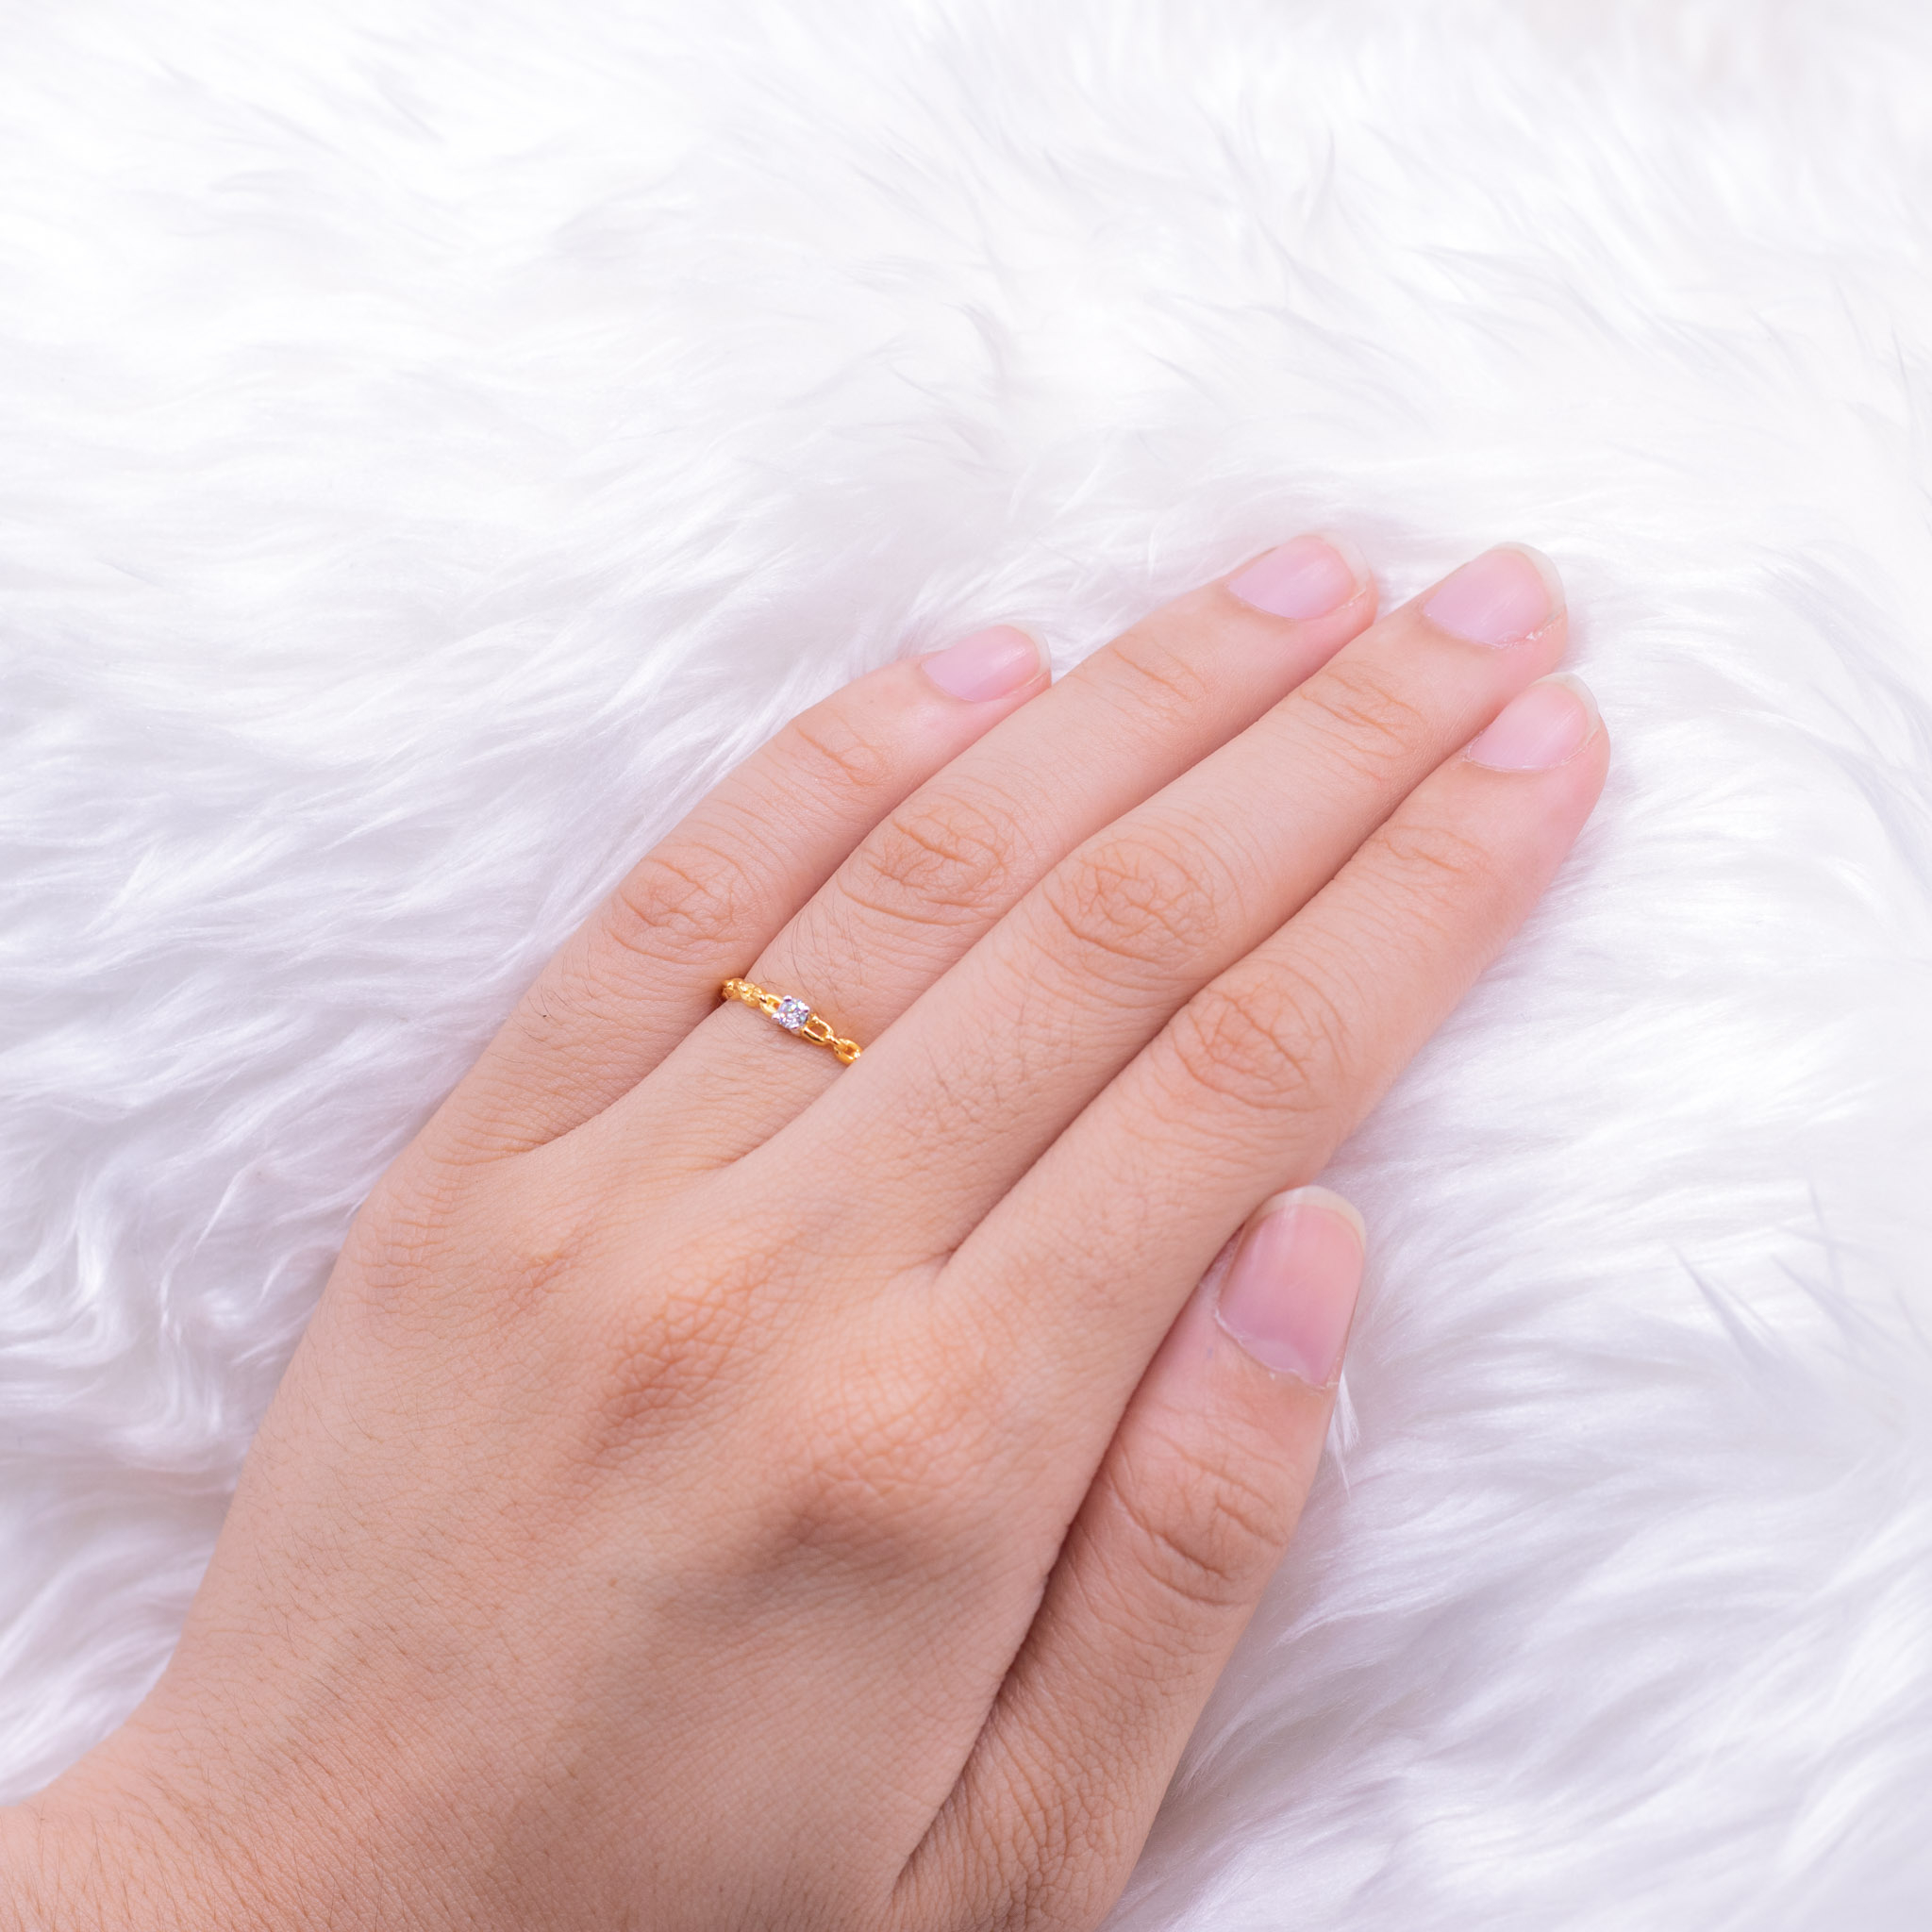 แหวนชู-เม็ดเดี่ยว-ดีไซด์เก๋ๆ-ลายโซ่-แหวนเพชร-แหวนทองเพชรแท้-ทองแท้-37-5-9k-me511